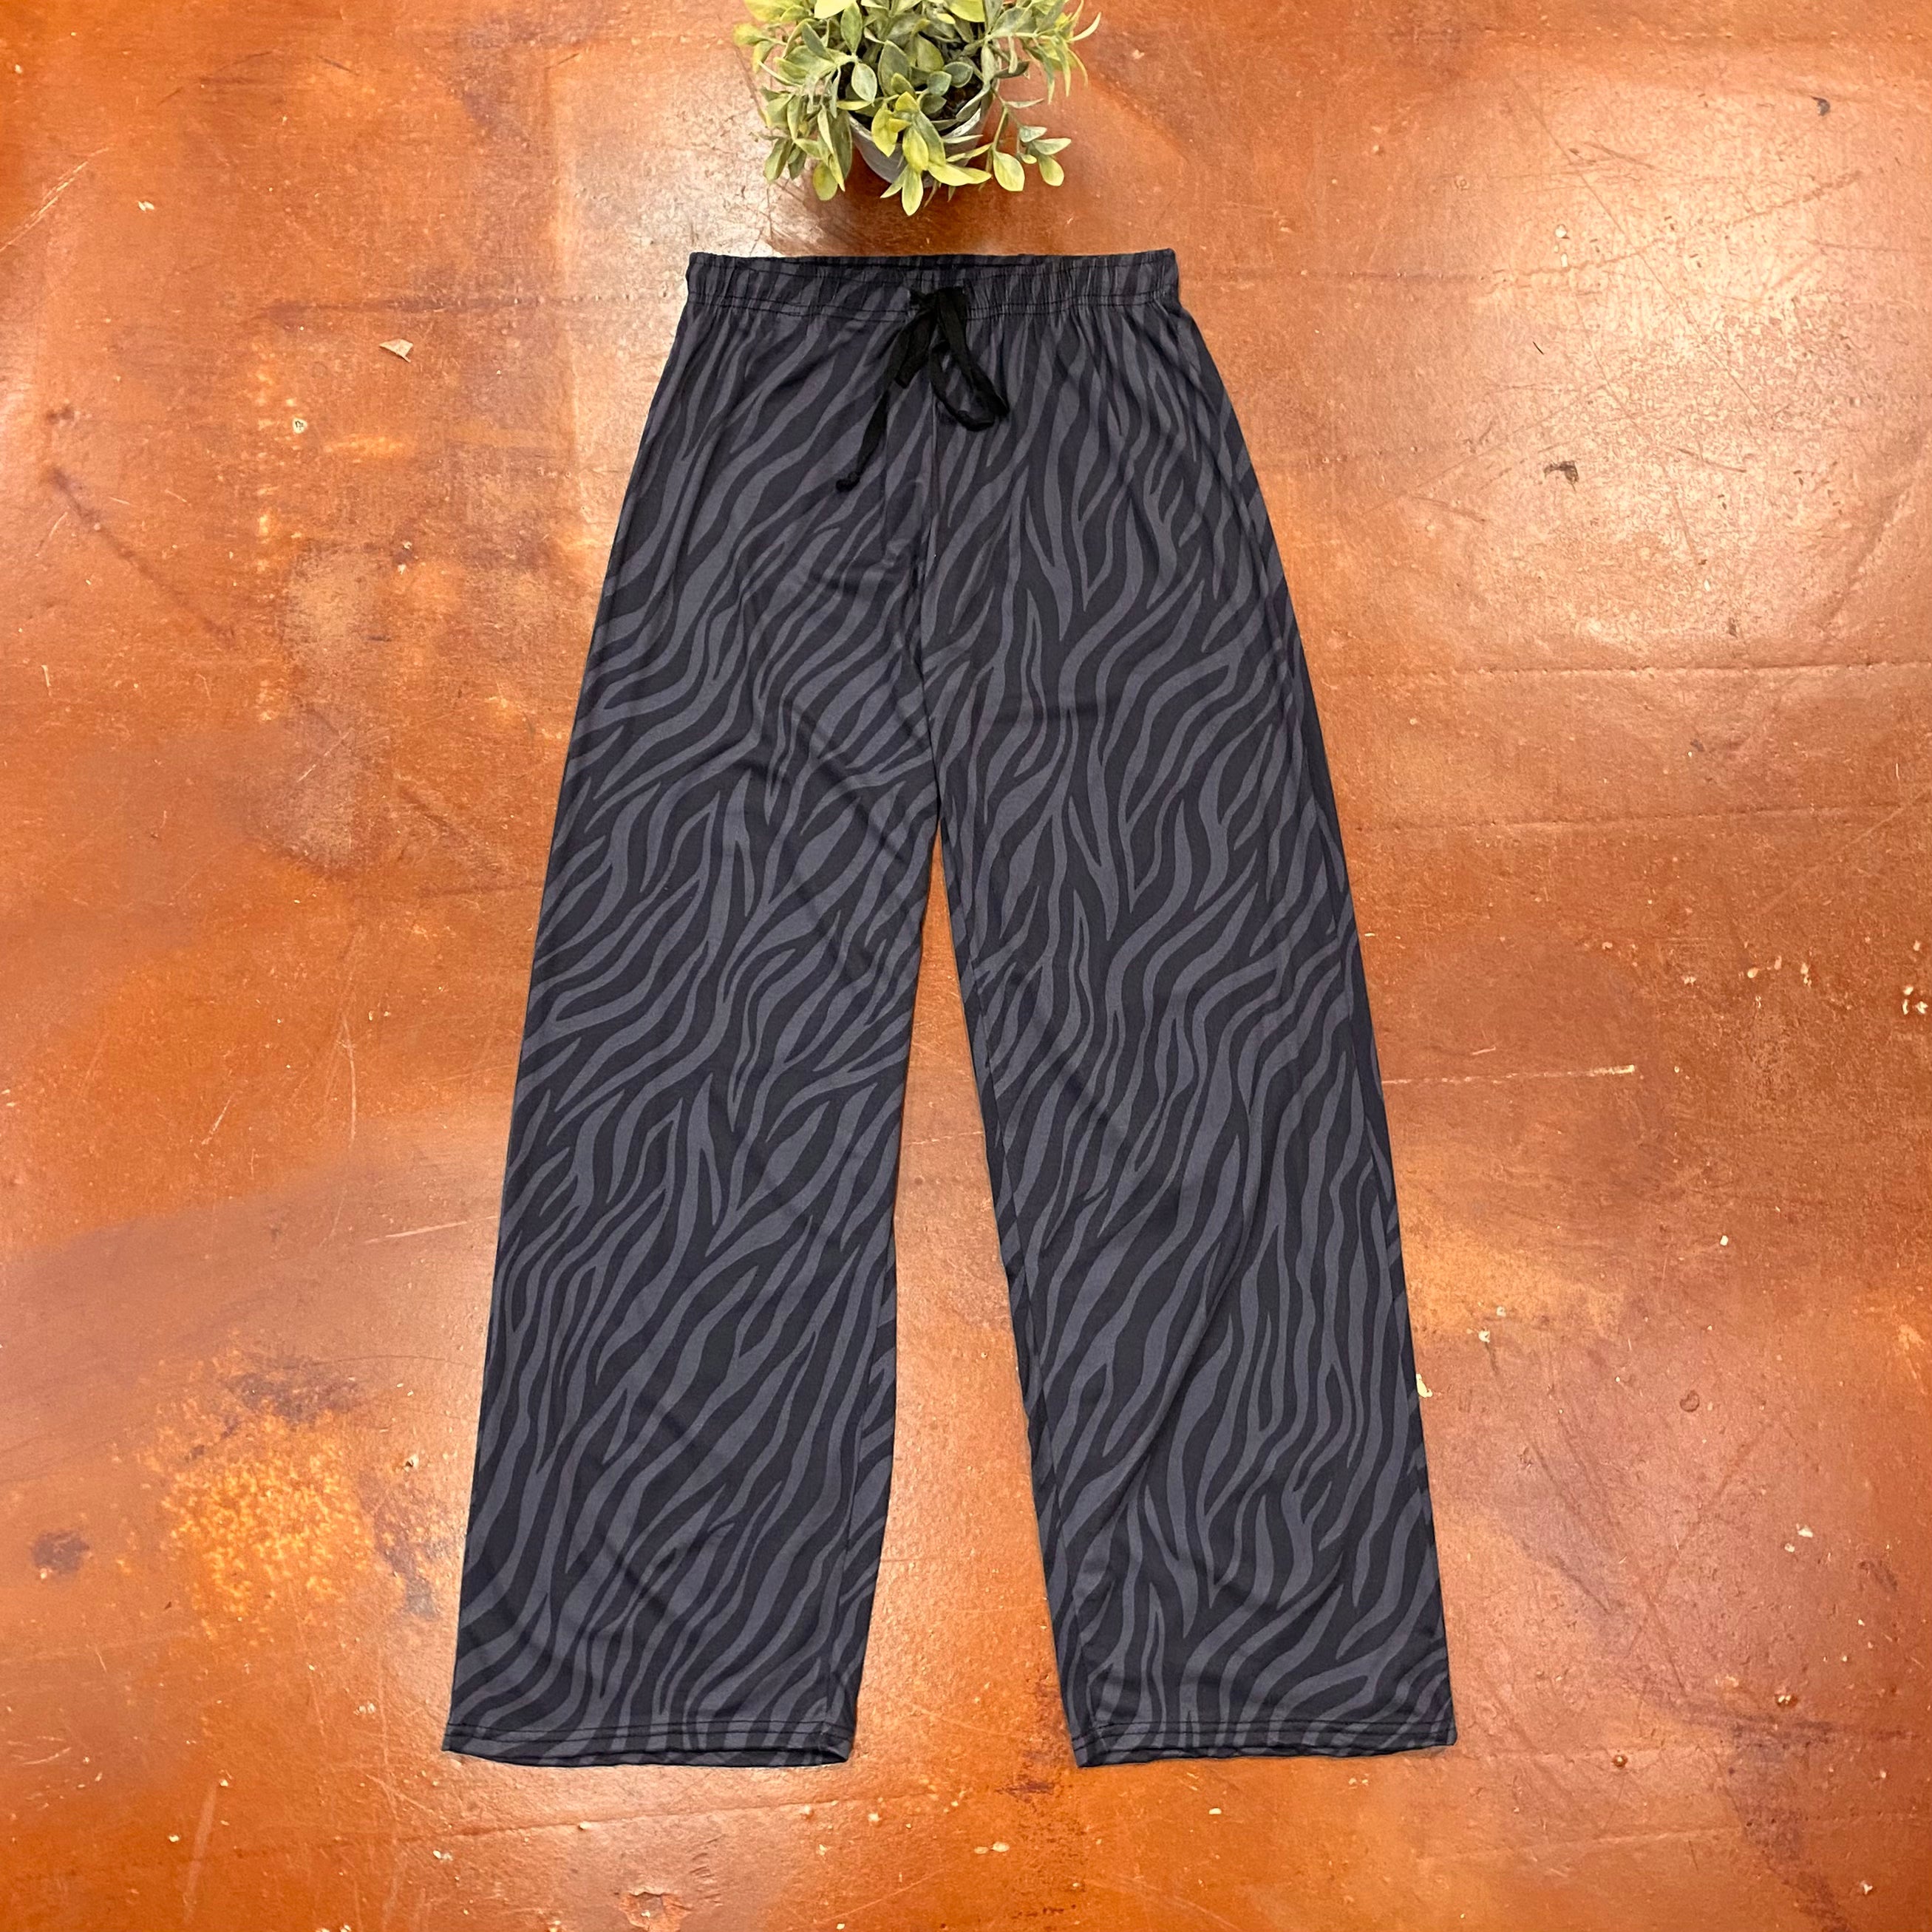 Zebra Lounge Pants